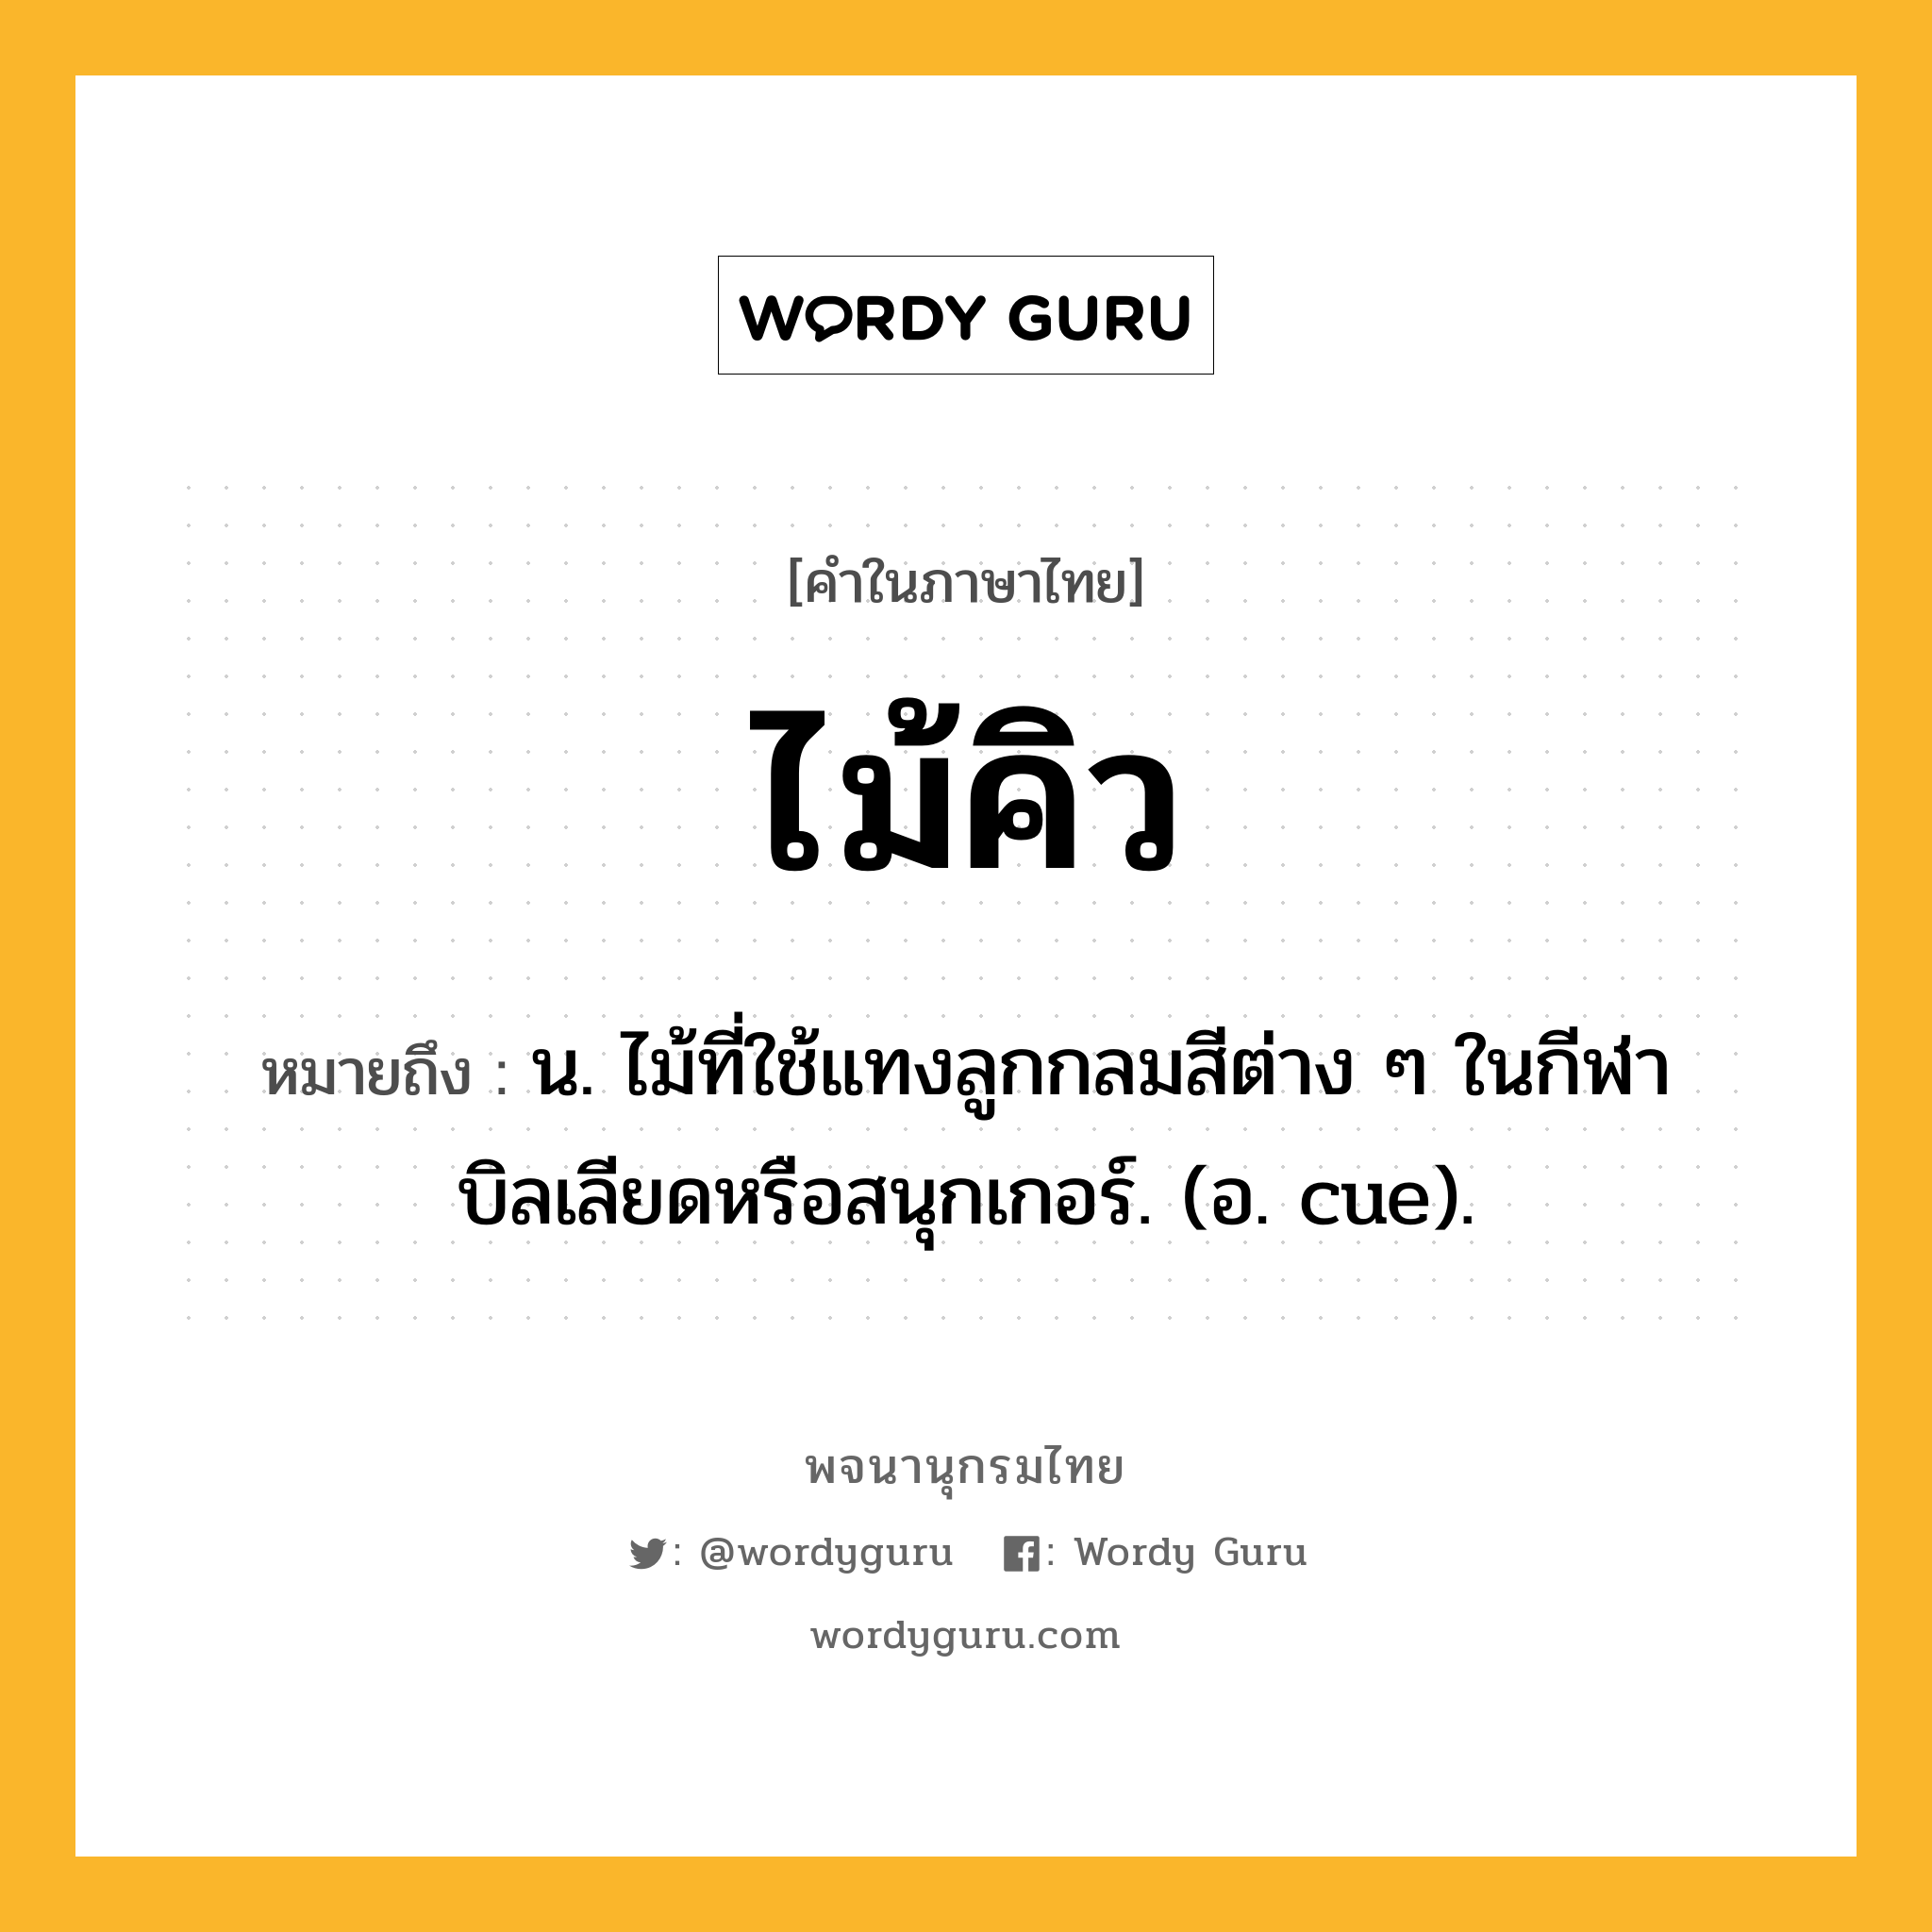 ไม้คิว ความหมาย หมายถึงอะไร?, คำในภาษาไทย ไม้คิว หมายถึง น. ไม้ที่ใช้แทงลูกกลมสีต่าง ๆ ในกีฬาบิลเลียดหรือสนุกเกอร์. (อ. cue).